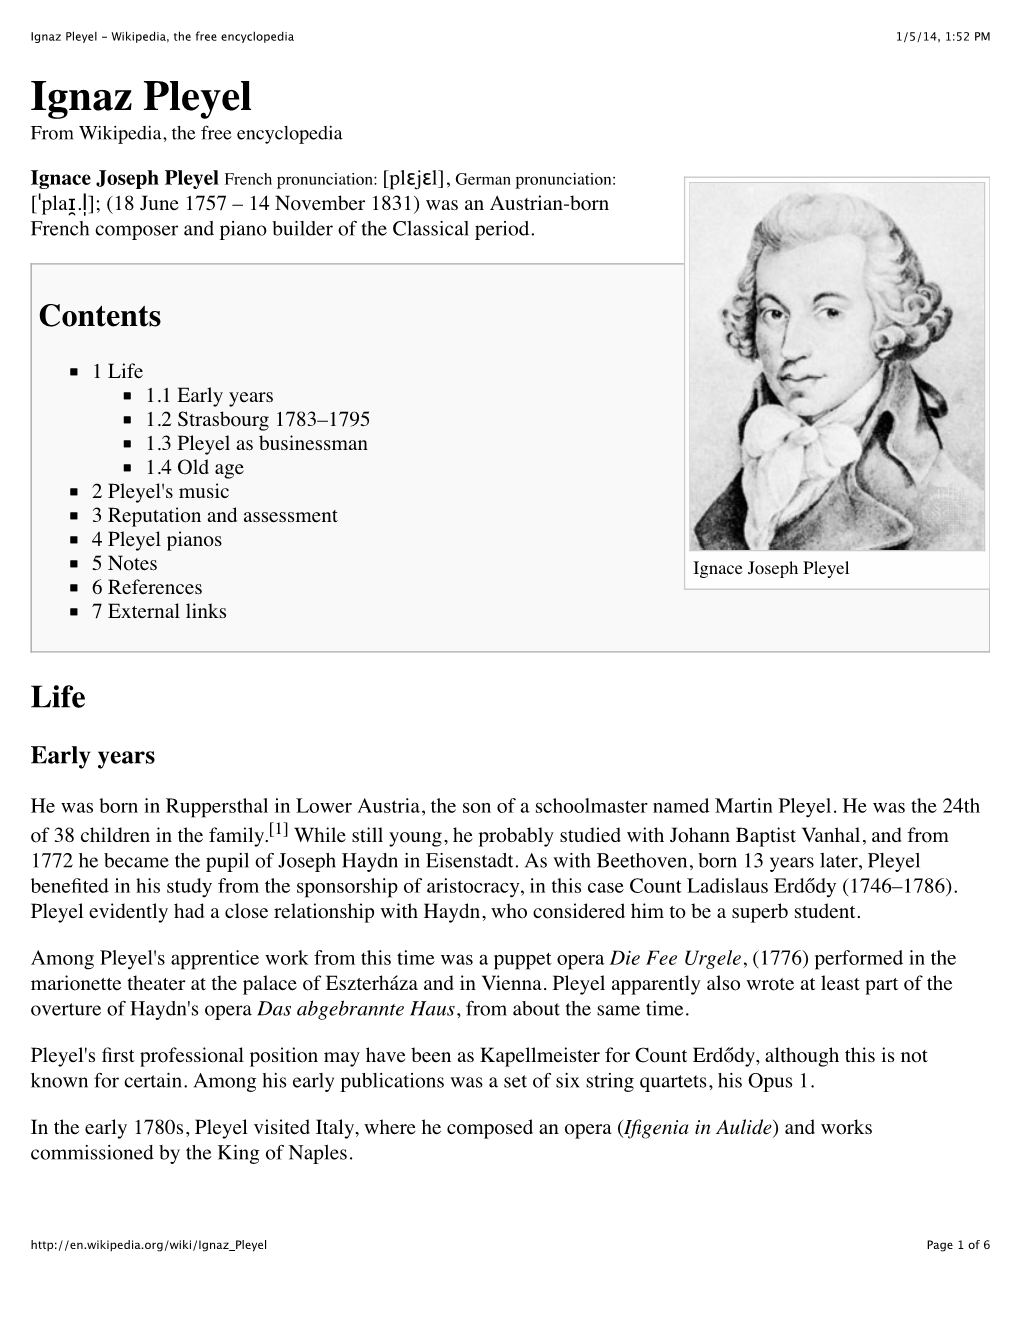 Ignaz Pleyel - Wikipedia, the Free Encyclopedia 1/5/14, 1:52 PM Ignaz Pleyel from Wikipedia, the Free Encyclopedia